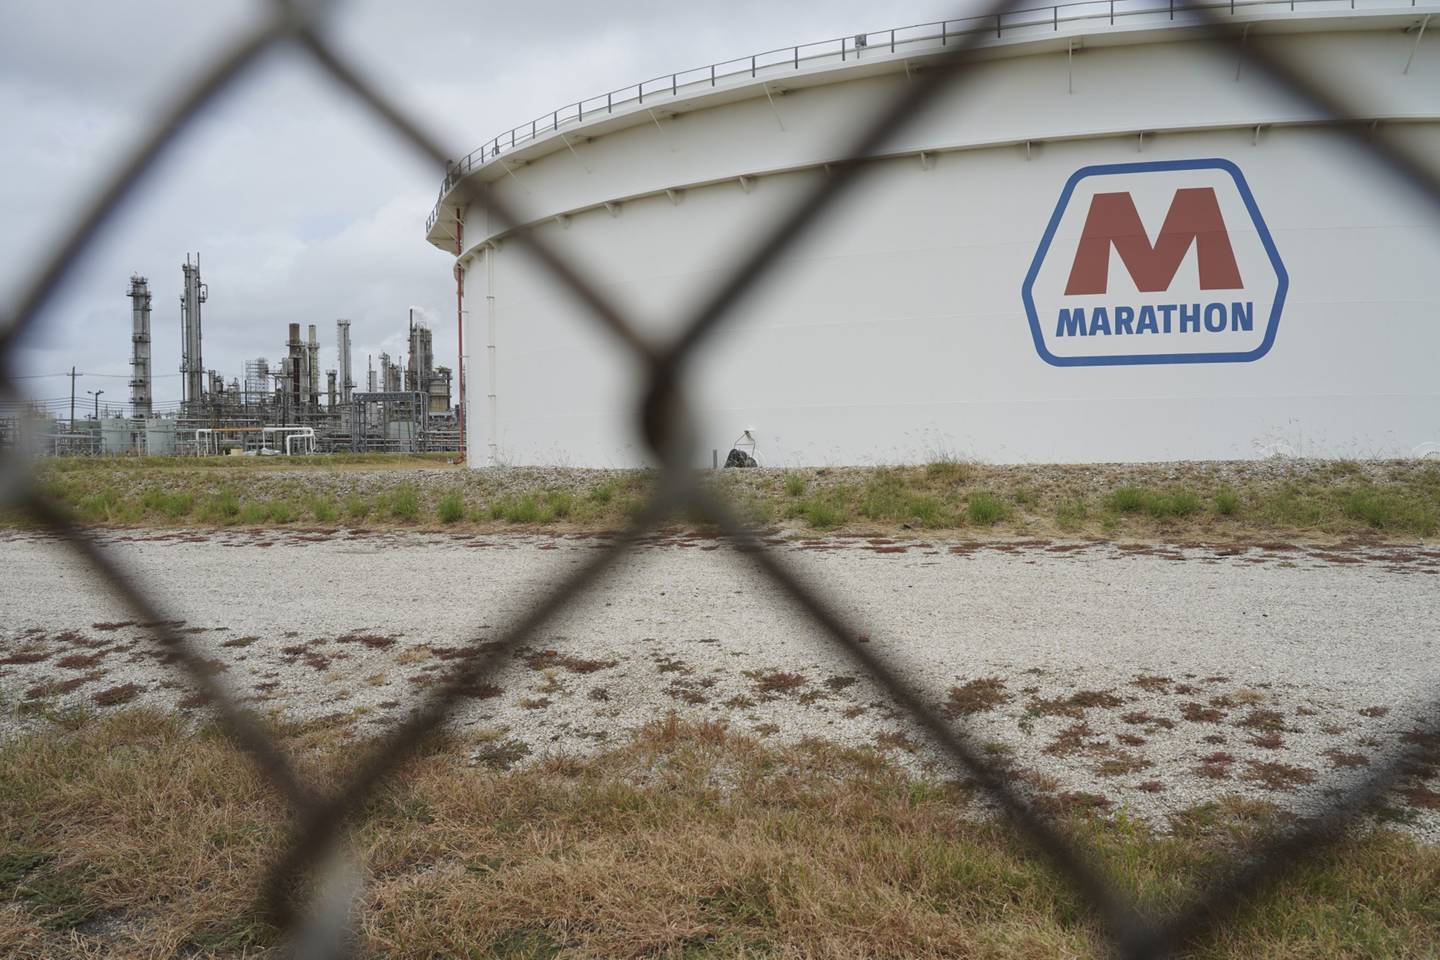 Un tanque de almacenamiento de crudo de la empresa Marathon Petrolum en Texas, Estados Unidos.